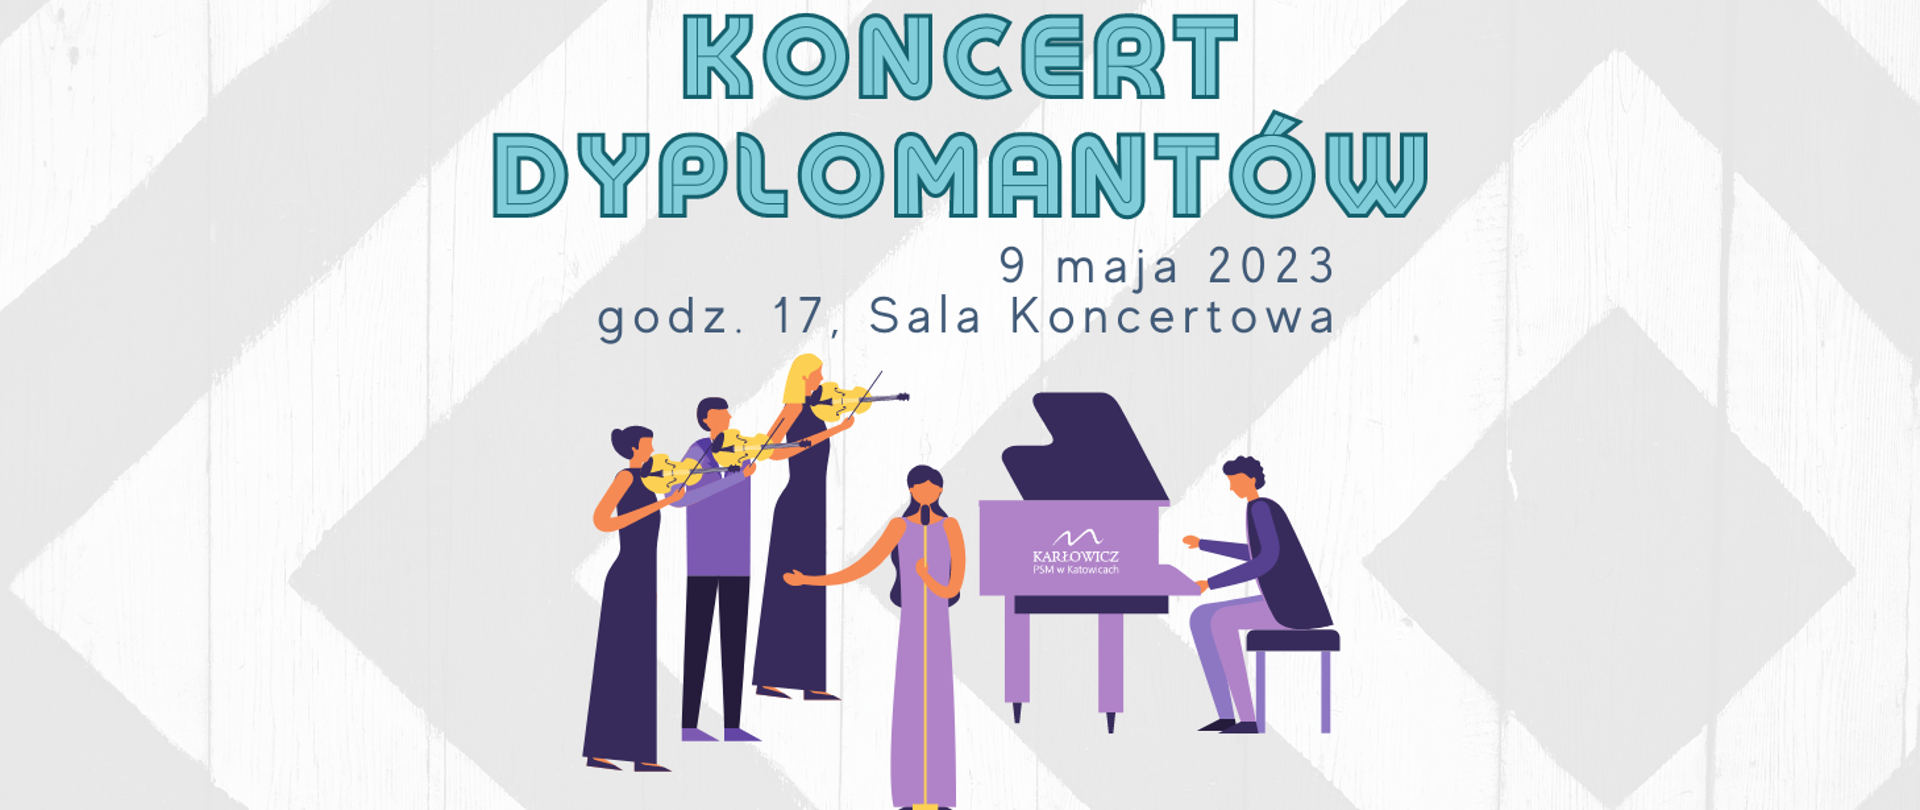 Grafika z napisem Koncert dyplomantów, 9 maja 2023, godzina 17, Sala Koncertowa w kolorze zielonym. Kolorowy rysunek w tonacji fioletowej przedstawiający kilka osób grających na różnych instrumentach.